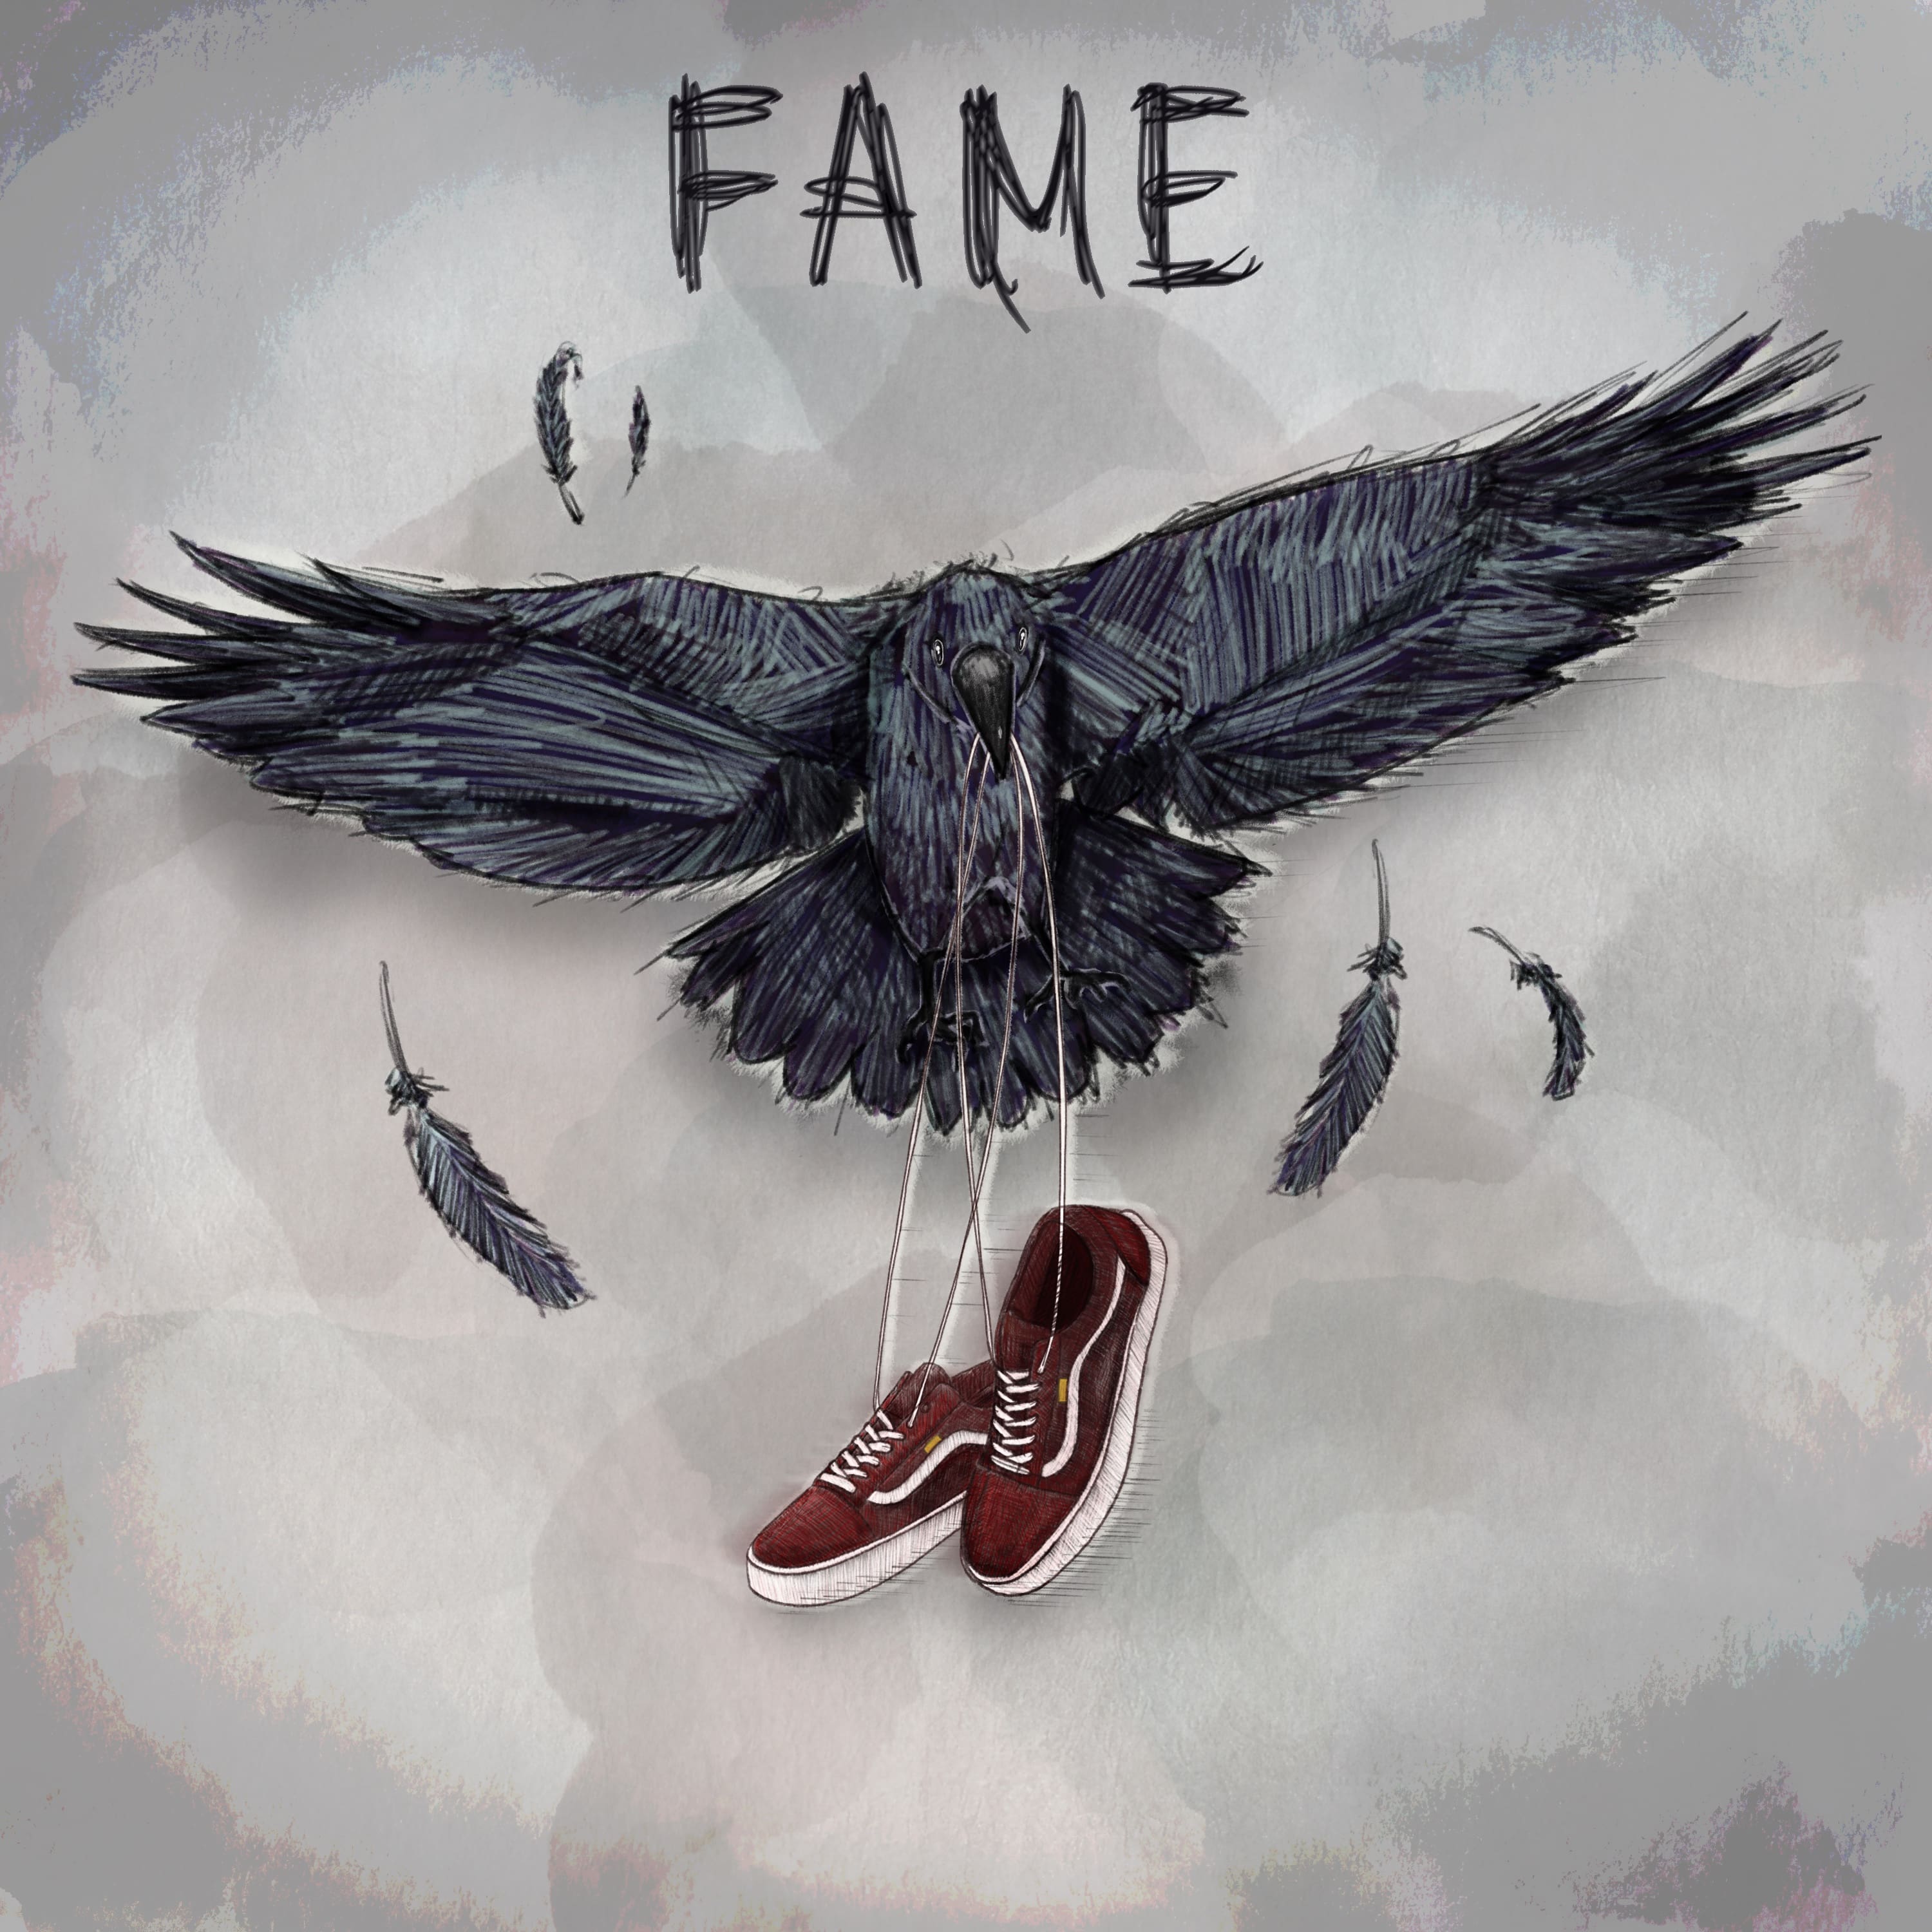 Fame, il nuovo ep degli Urbania [Recensione] 6